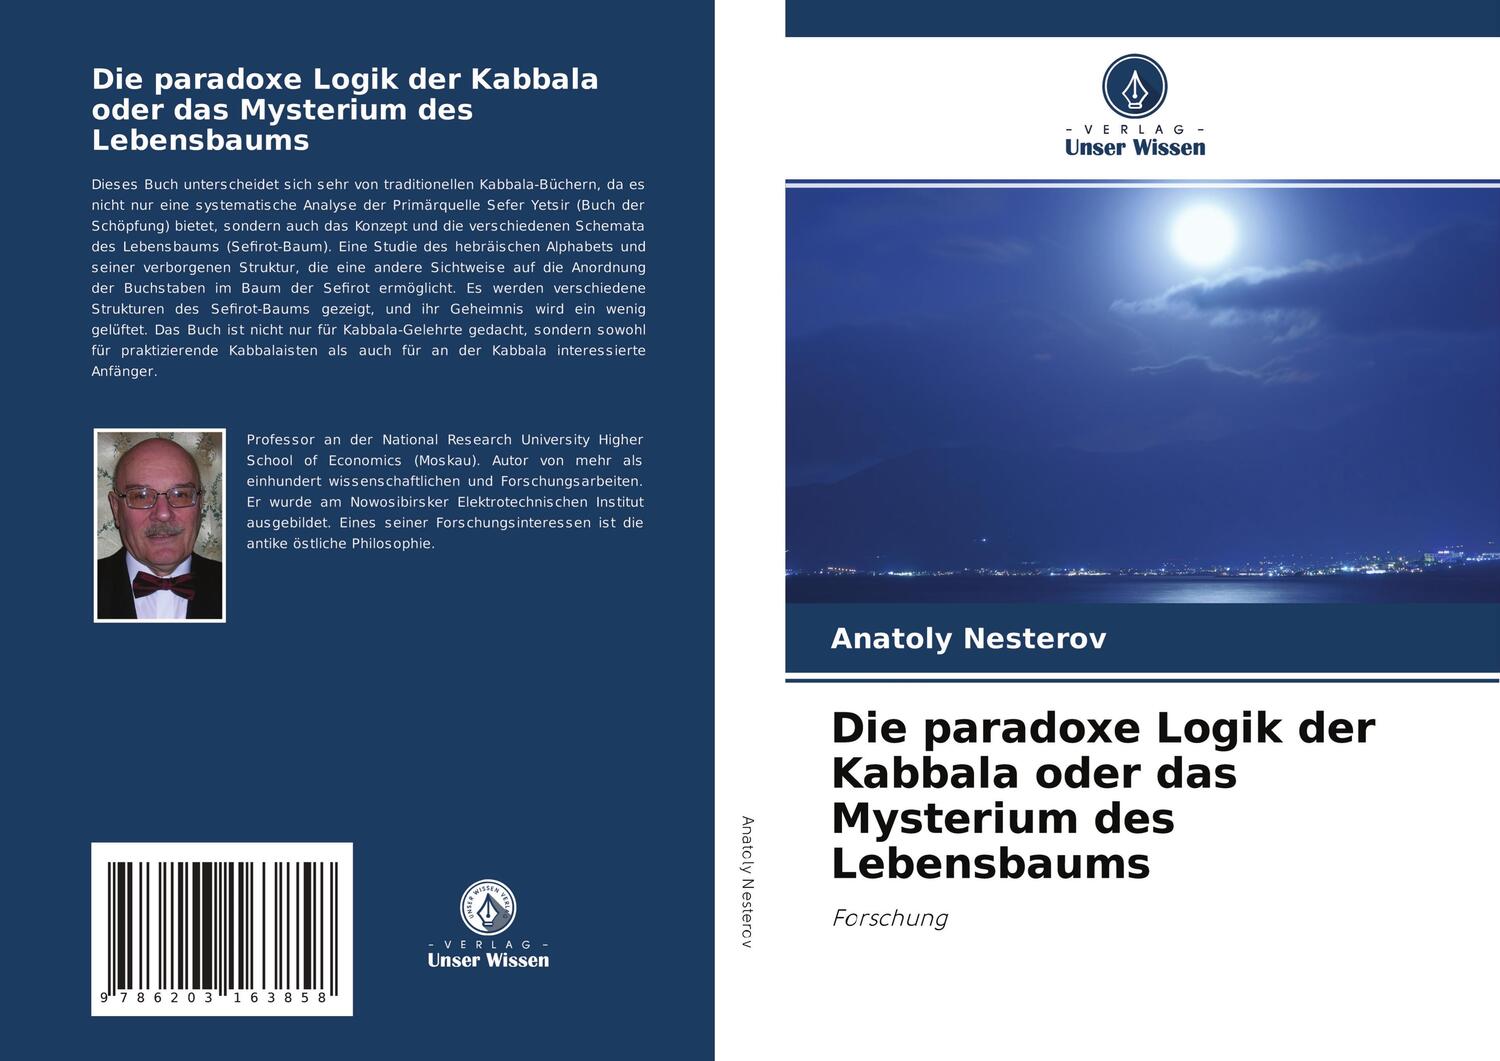 Cover: 9786203163858 | Die paradoxe Logik der Kabbala oder das Mysterium des Lebensbaums